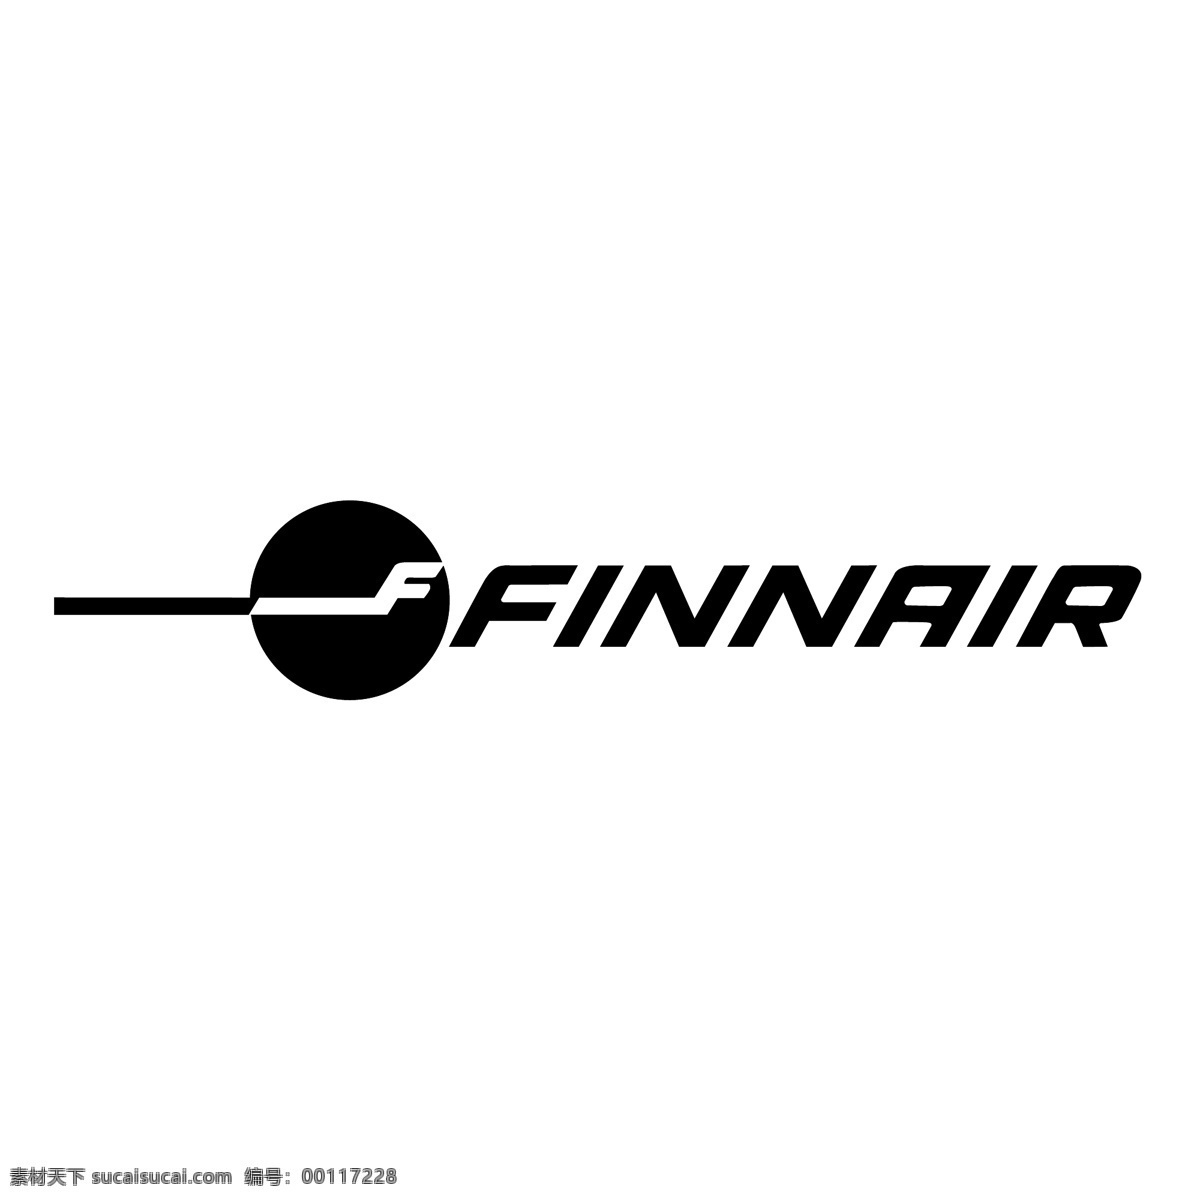 芬兰 航空公司 标志 芬兰航空公司 向量 向量芬航标志 矢量 芬航 矢量图 建筑家居